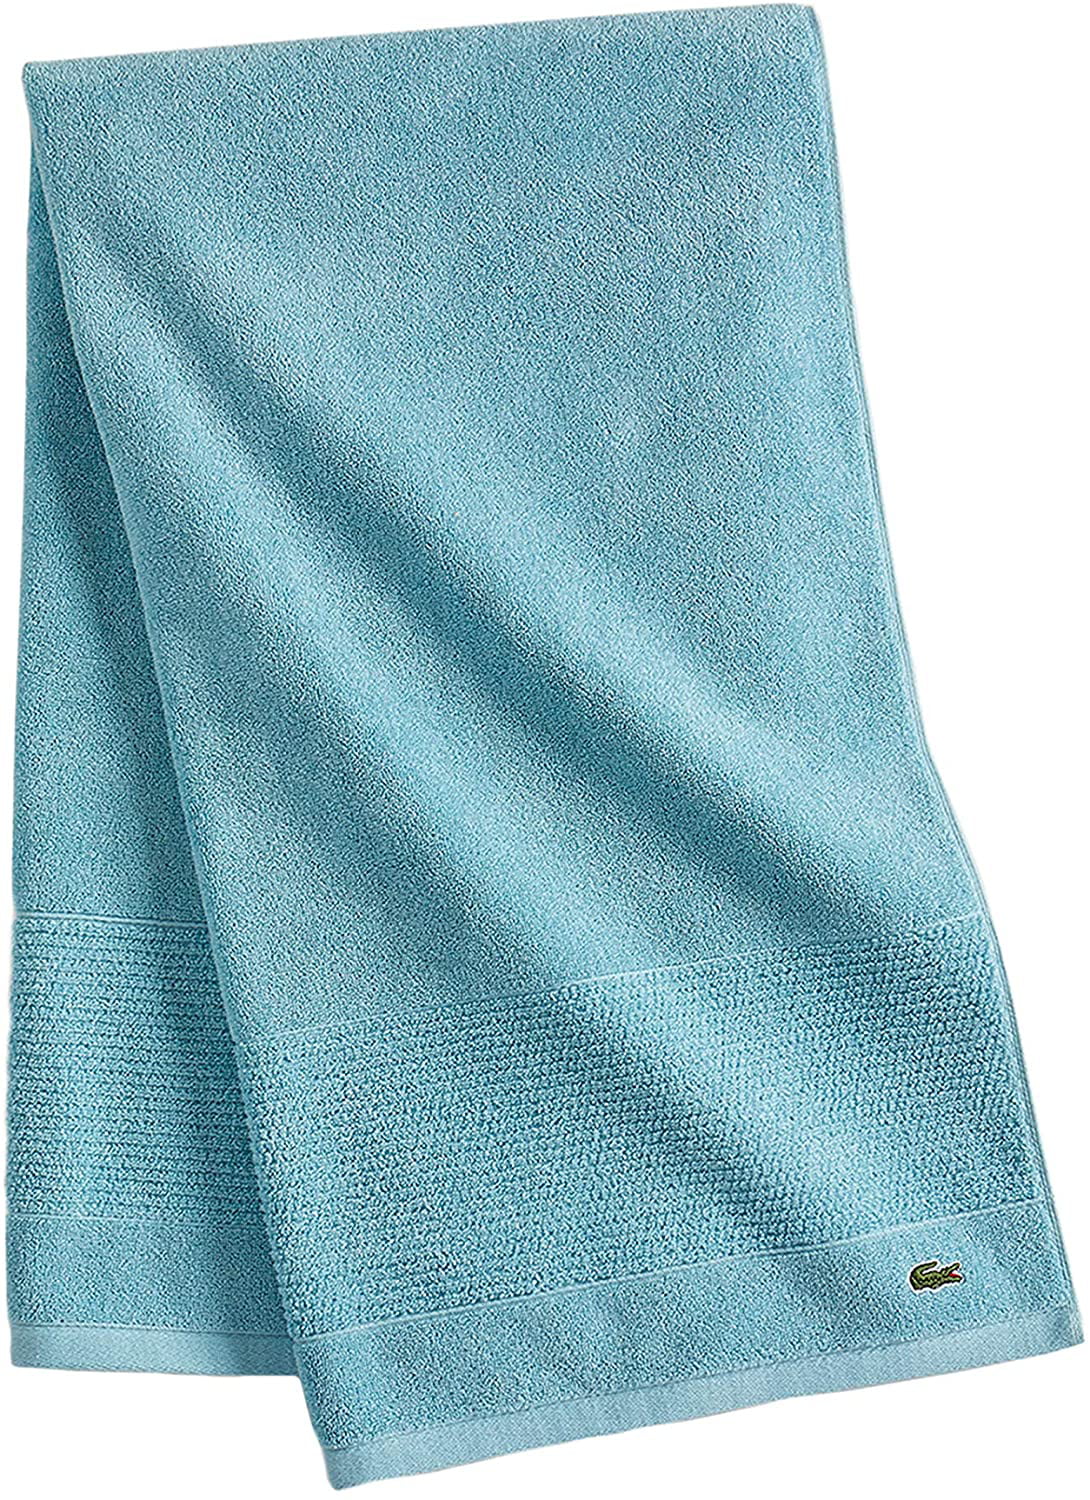 30' x 54' Bath Towel Dark Gray in Color Lacoste Legend Towel 100% Cotton Loops 